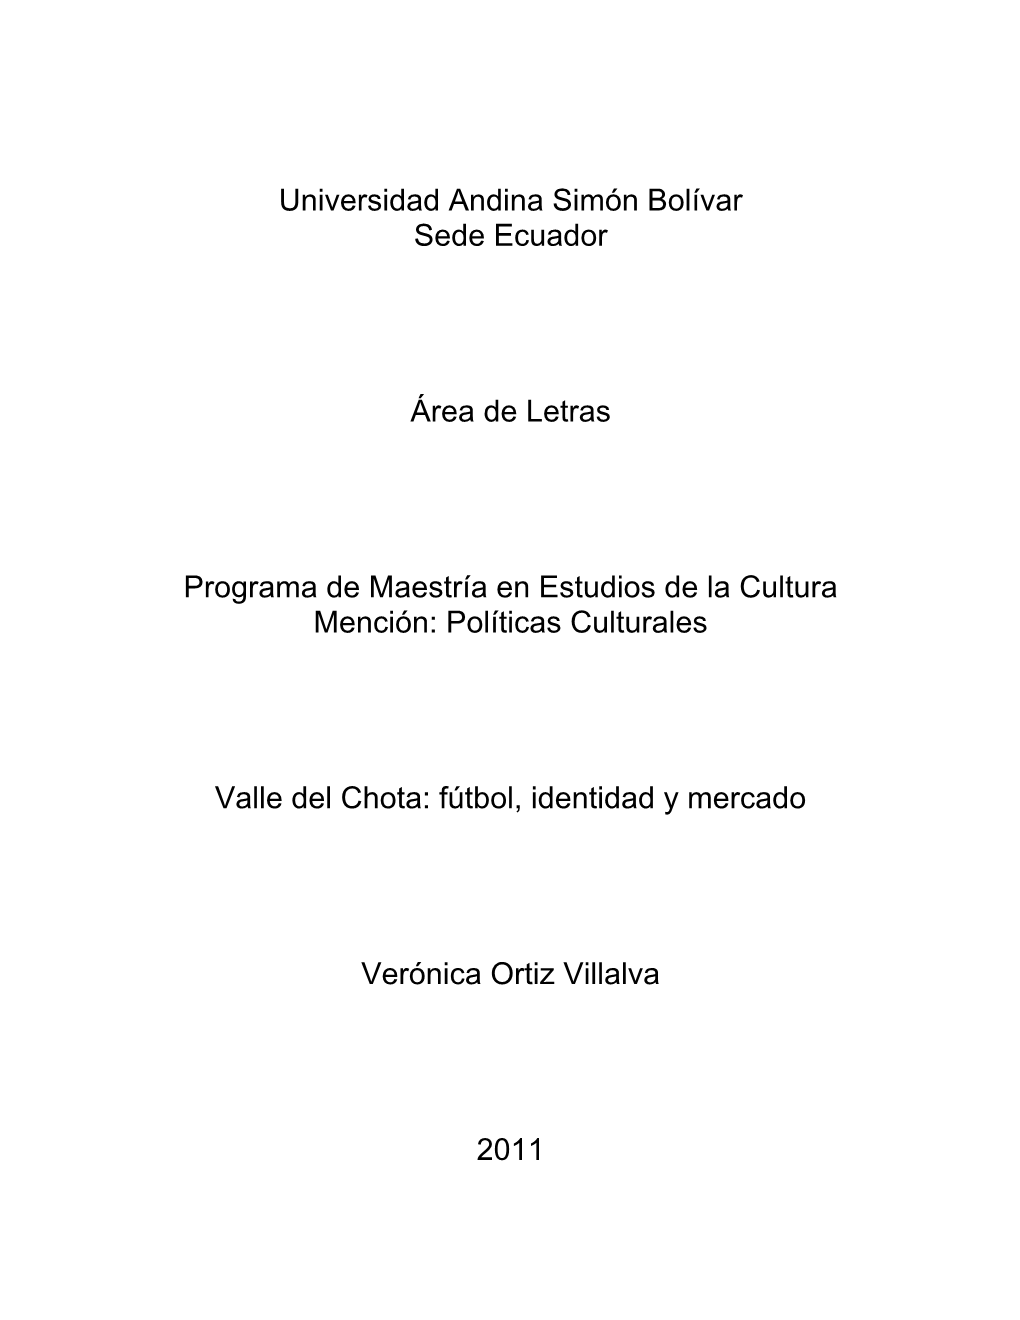 Universidad Andina Simón Bolívar Sede Ecuador Área De